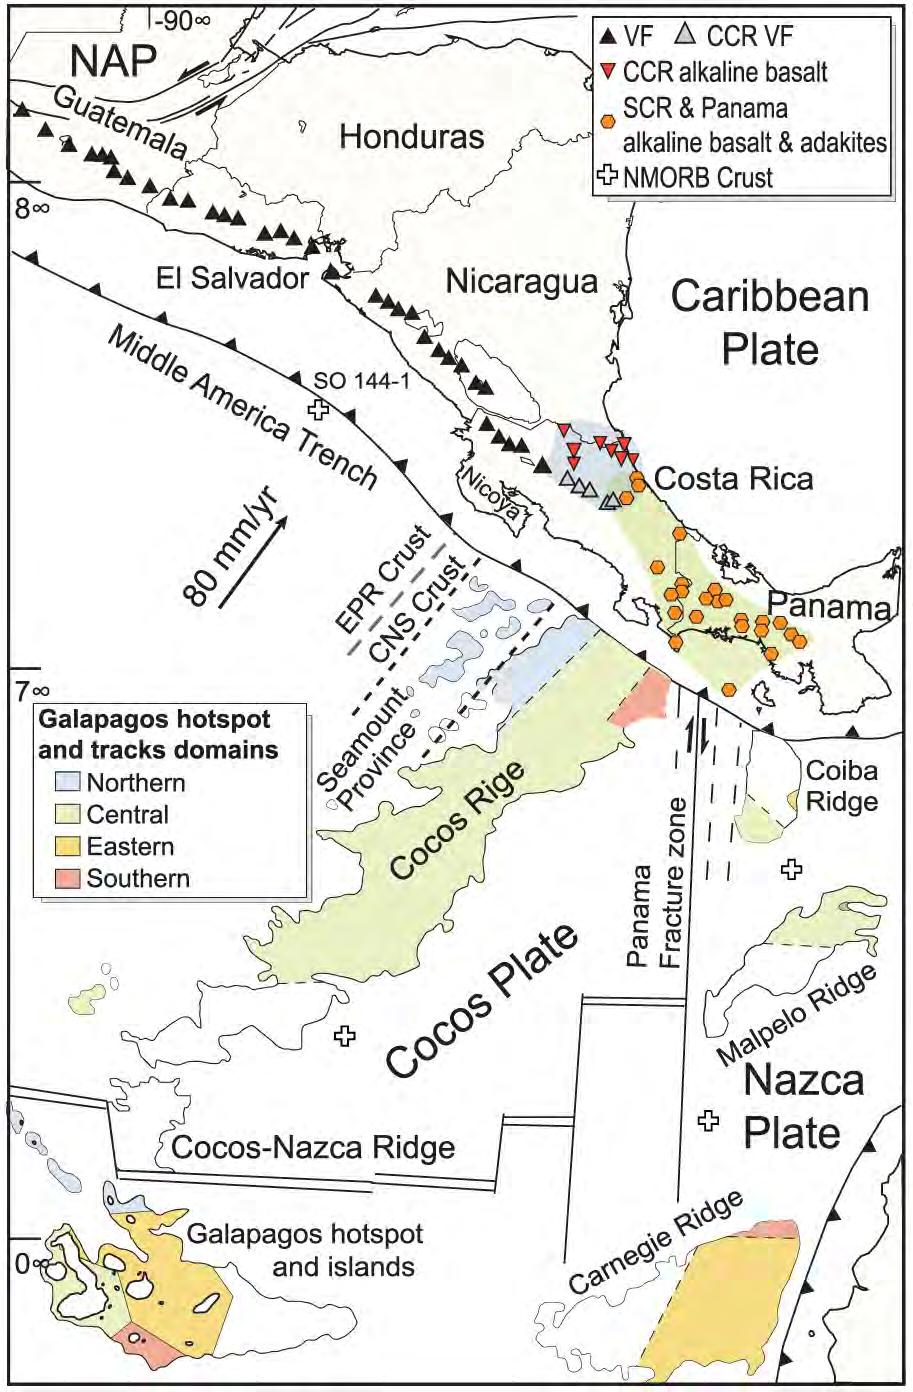 Cocos Ridge Ø Galapagos hotspot was never